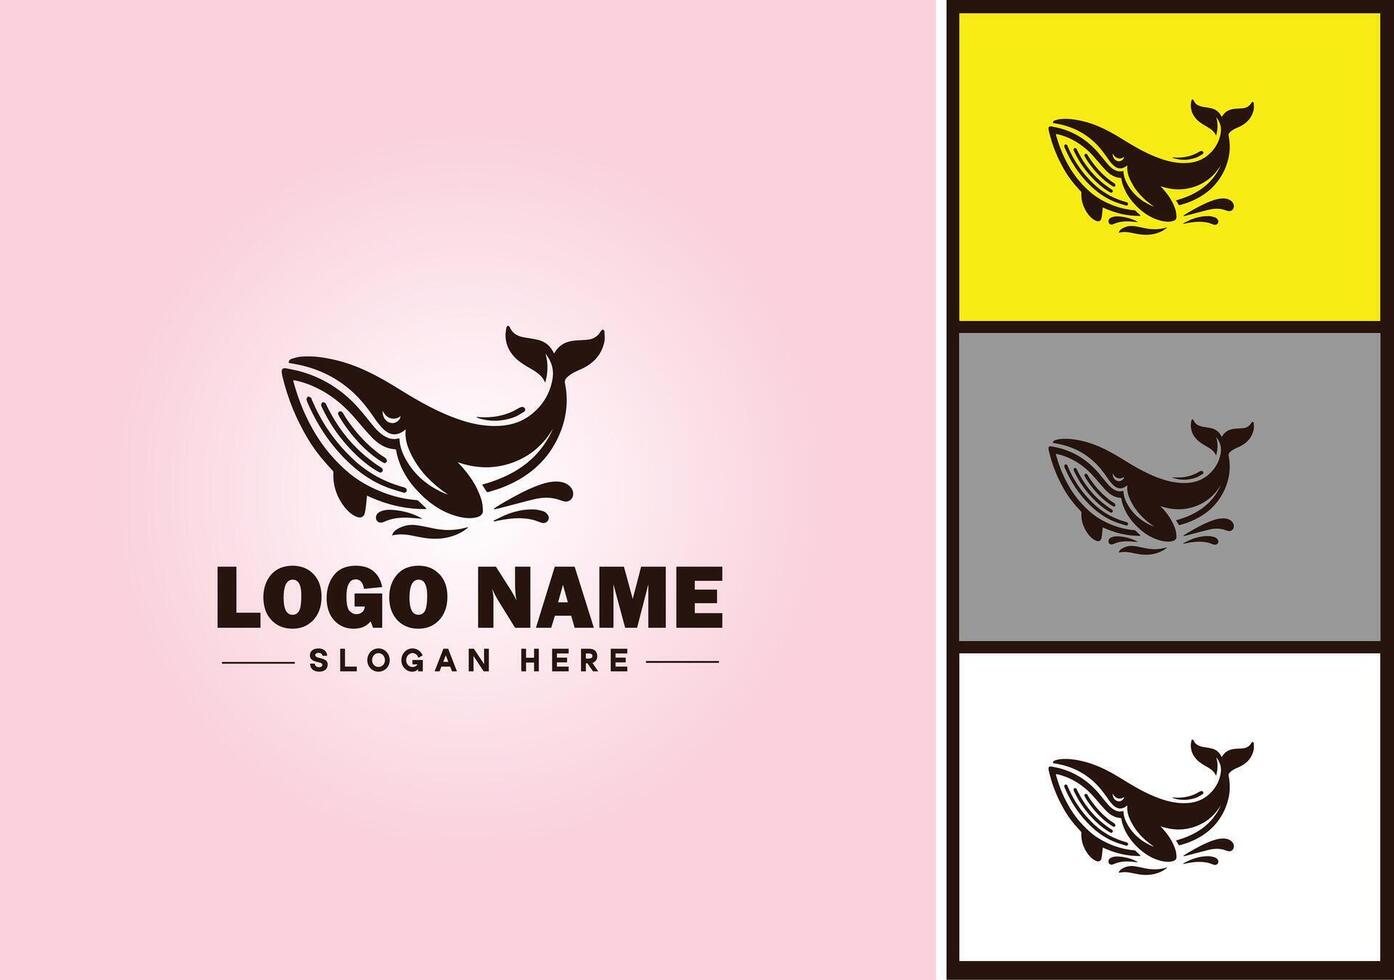 balena icona logo vettore arte grafica per attività commerciale marca icona balena pesce oceano logo modello